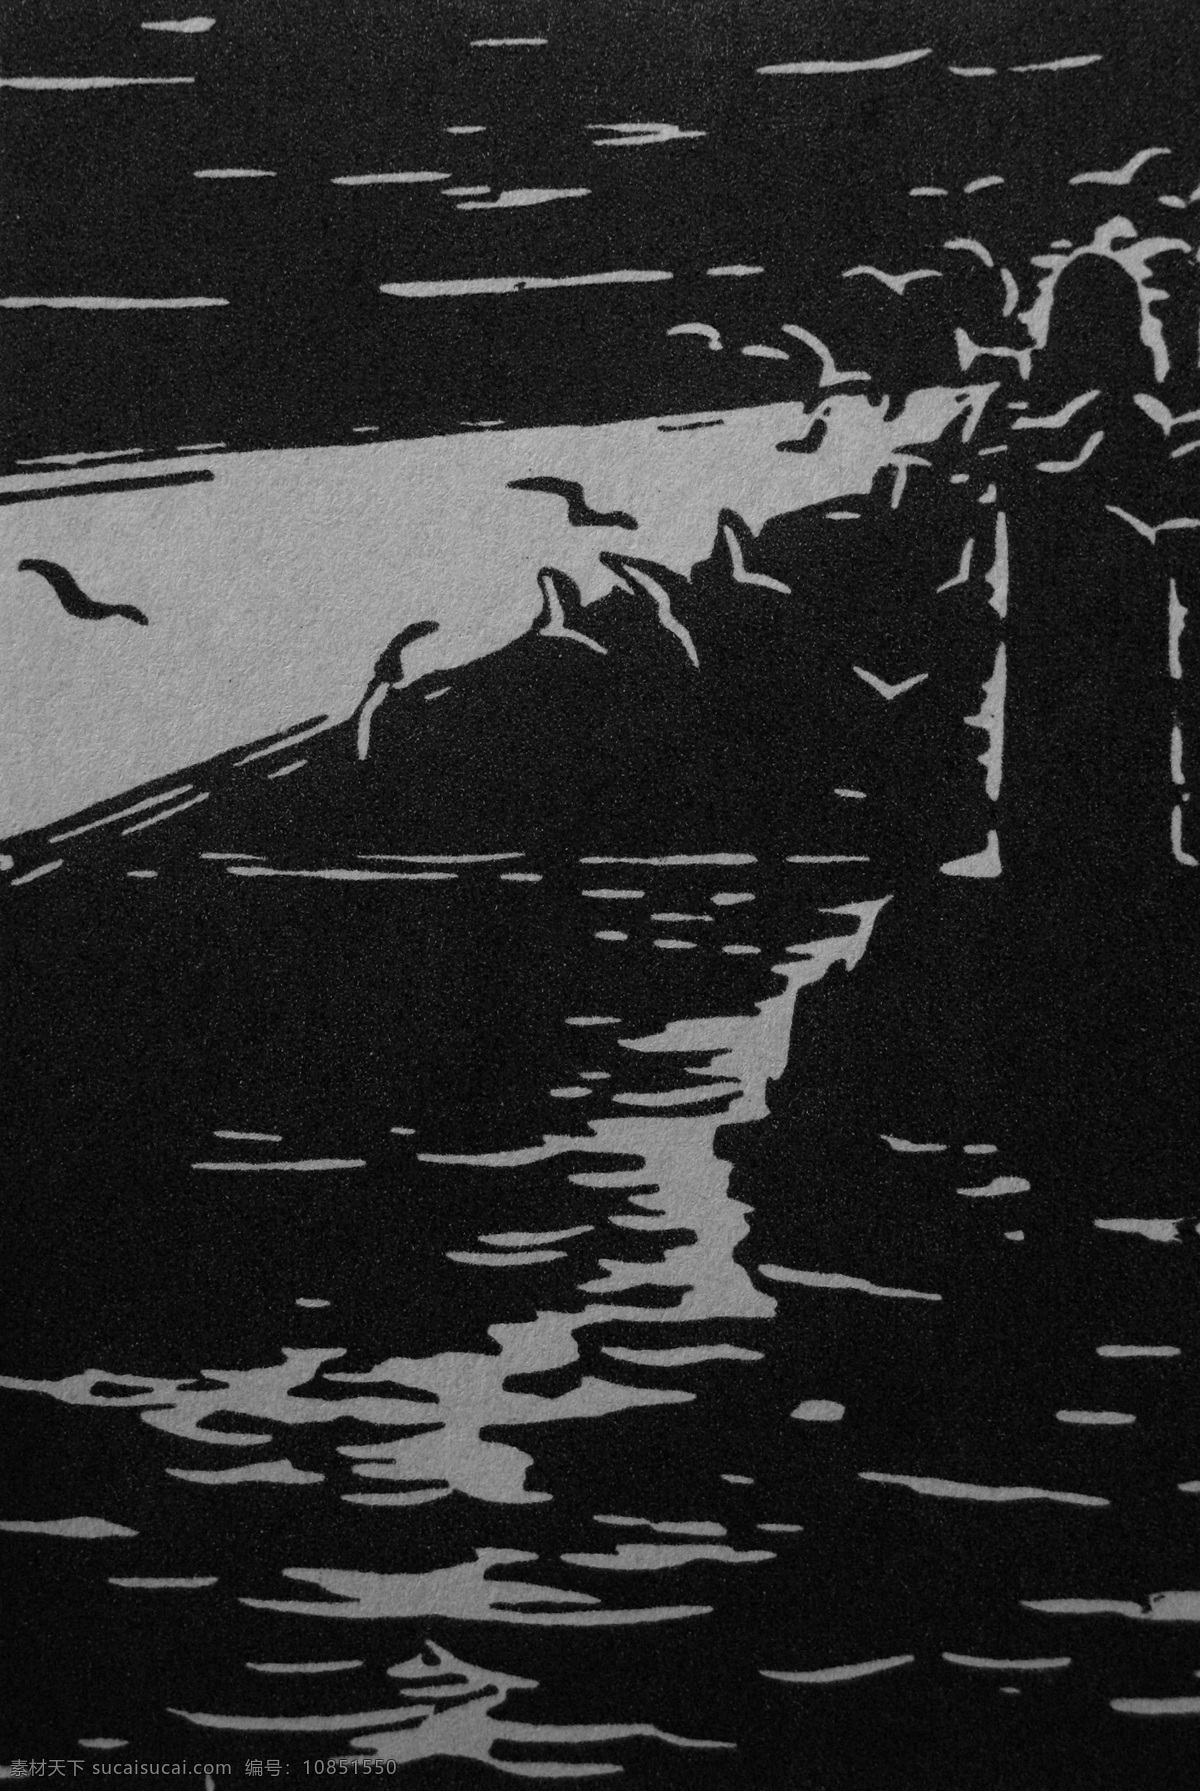 夜组画之一 木刻版画 法朗 士 麦绥莱勒 1953年 黑夜 夜晚 雕像 剪影 飞鸟 海水 海鸟 艺术 绘画 雕版 印刷 木刻 版画 作品 绘画书法 文化艺术